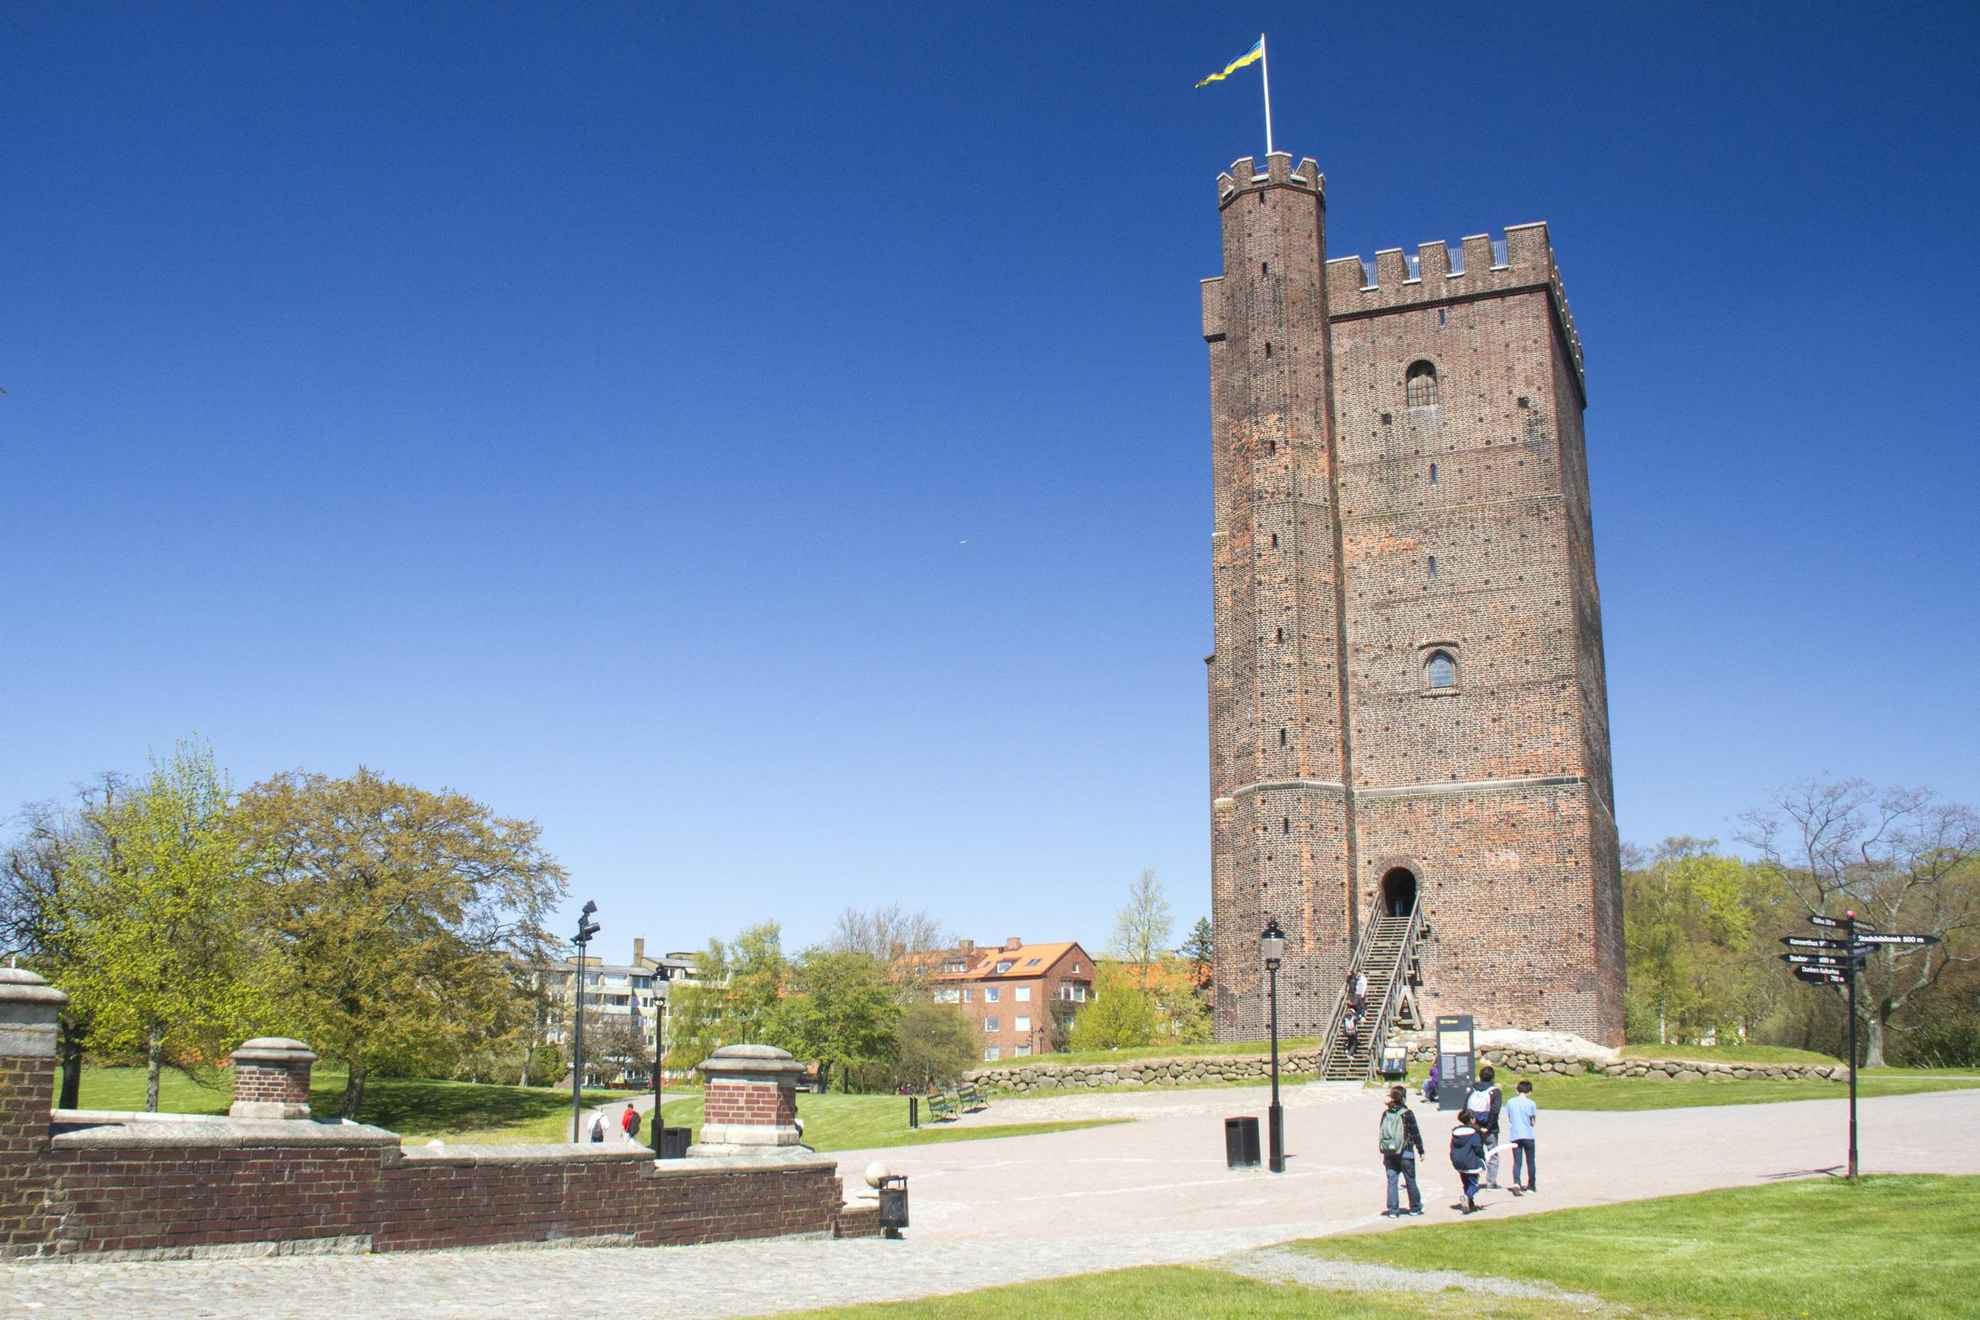 Die mittelalterliche Festung Kärnan Tower im Zentrum von Helsingborg. Einige Leute gehen auf der Treppe zum Turm und einige Leute gehen vorbei.